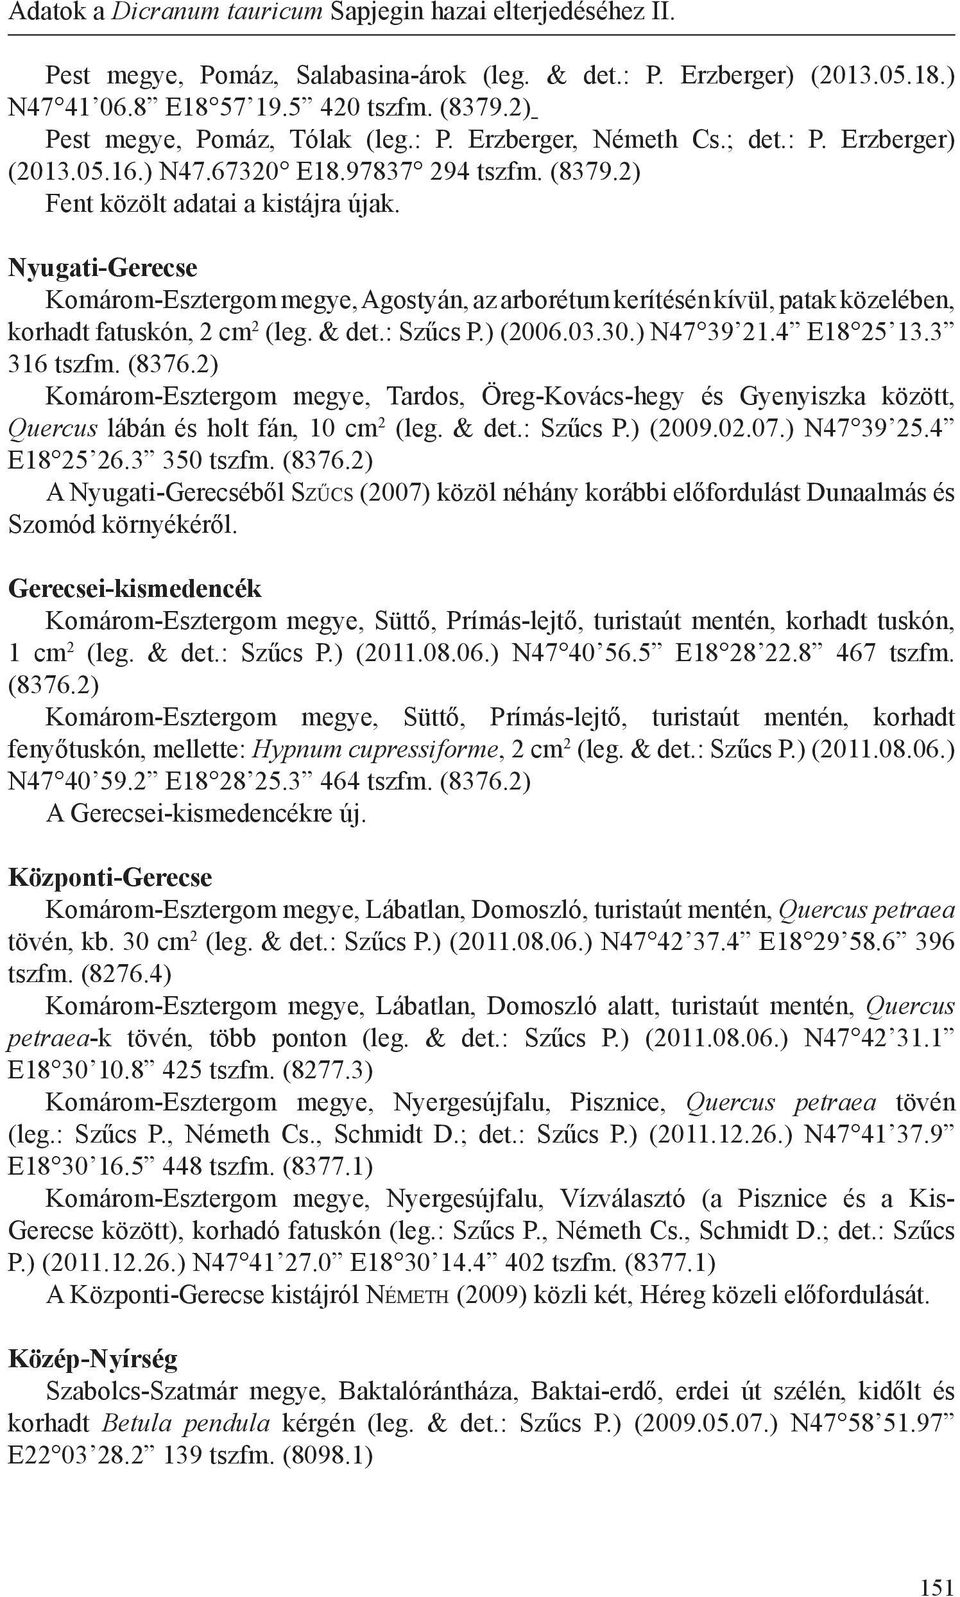 Adatok a Dicranum tauricum Sapjegin hazai elterjedéséhez II. - PDF Ingyenes  letöltés